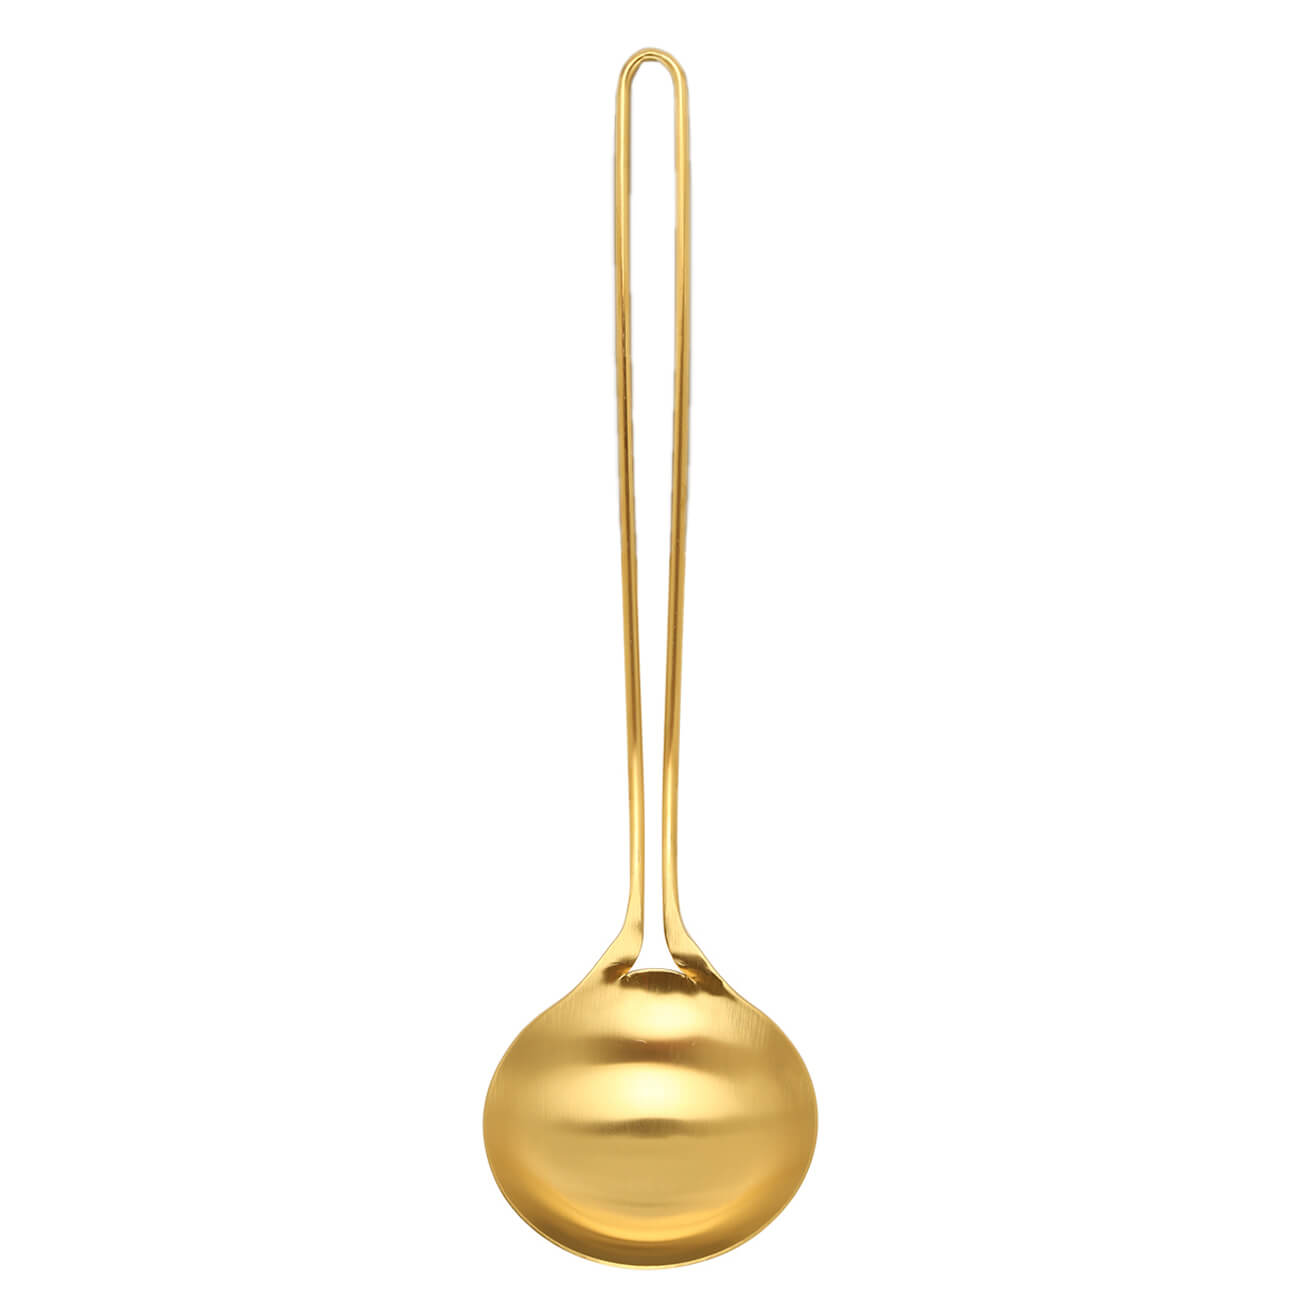 Половник, 35 см, сталь, золотистый, Device gold половник ballarini rosso